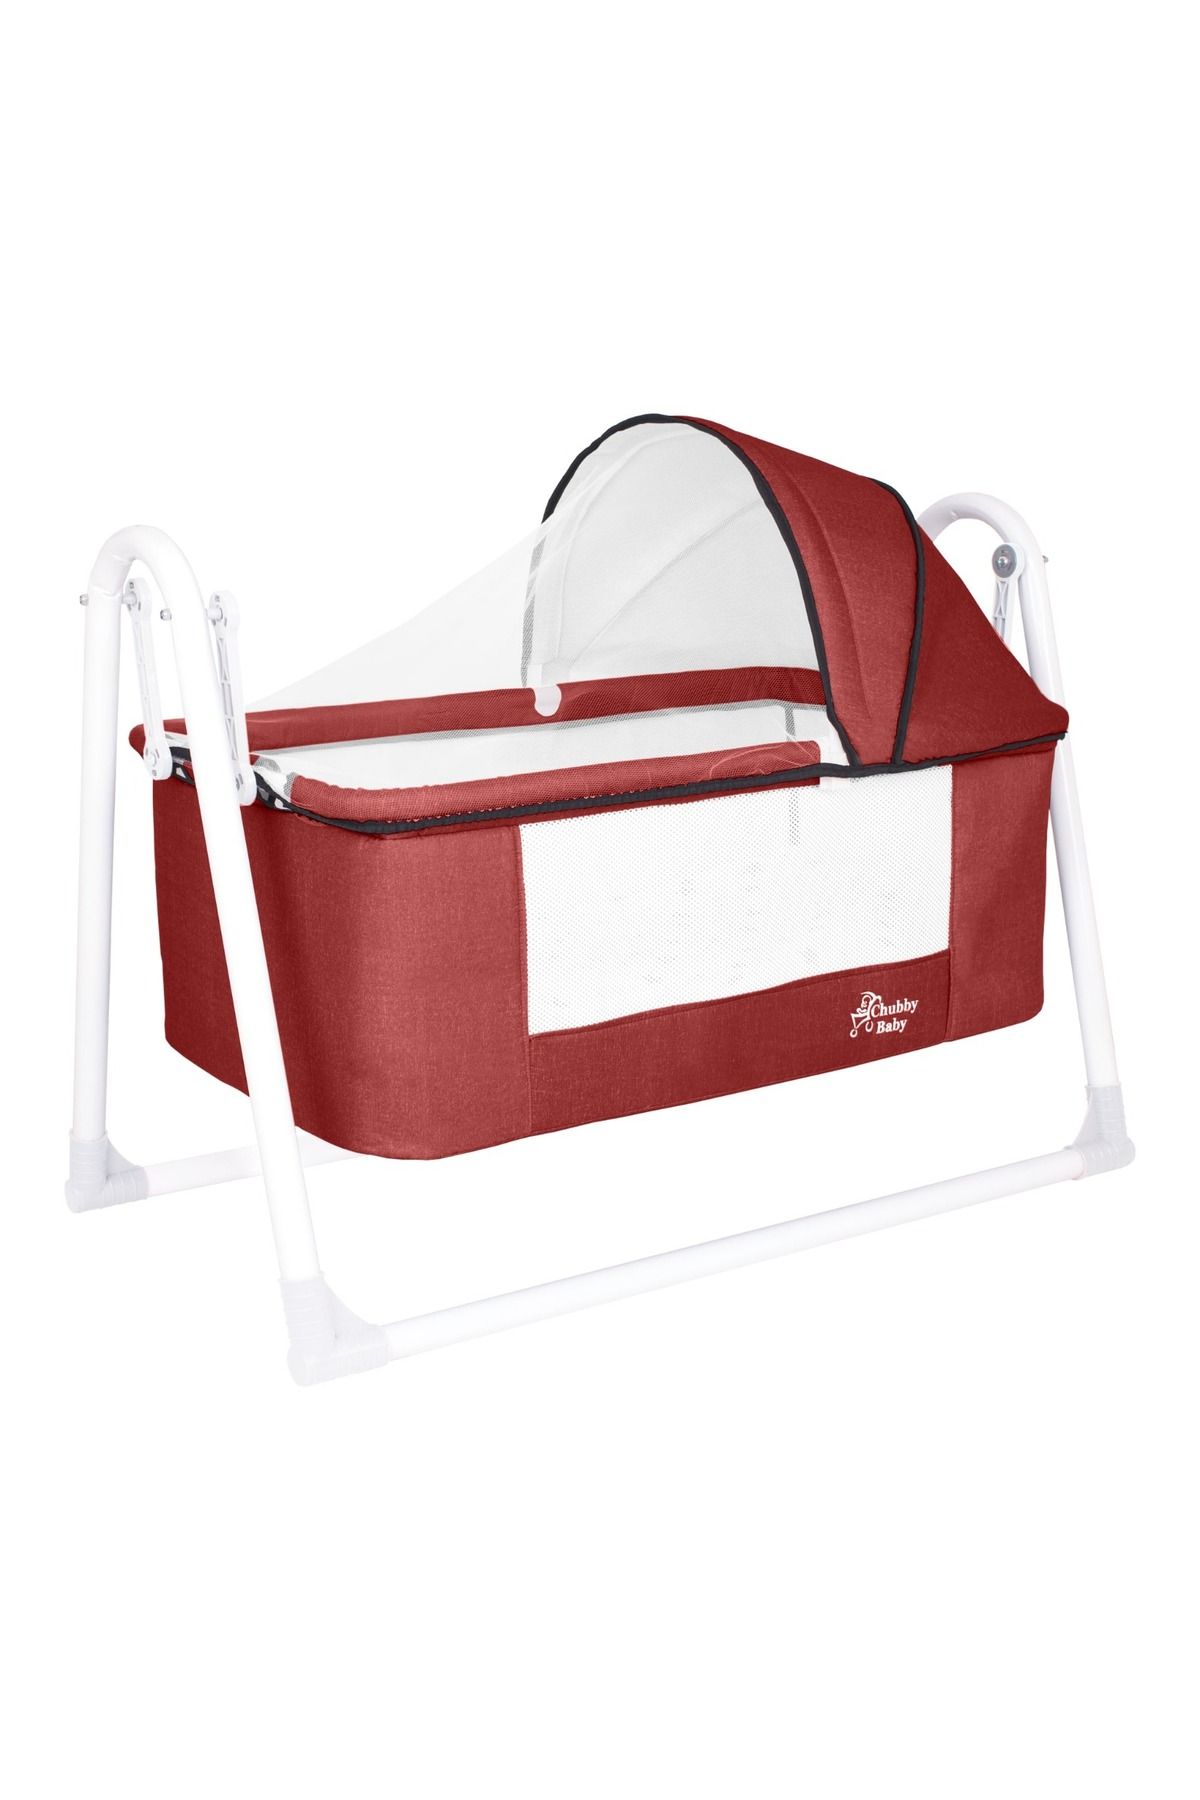 Eniyisiannesi Chubby Baby First Class Portatif-keten Tenteli Sepet Beşik Silinebilir Kumaş Bebeciden Kırmızı